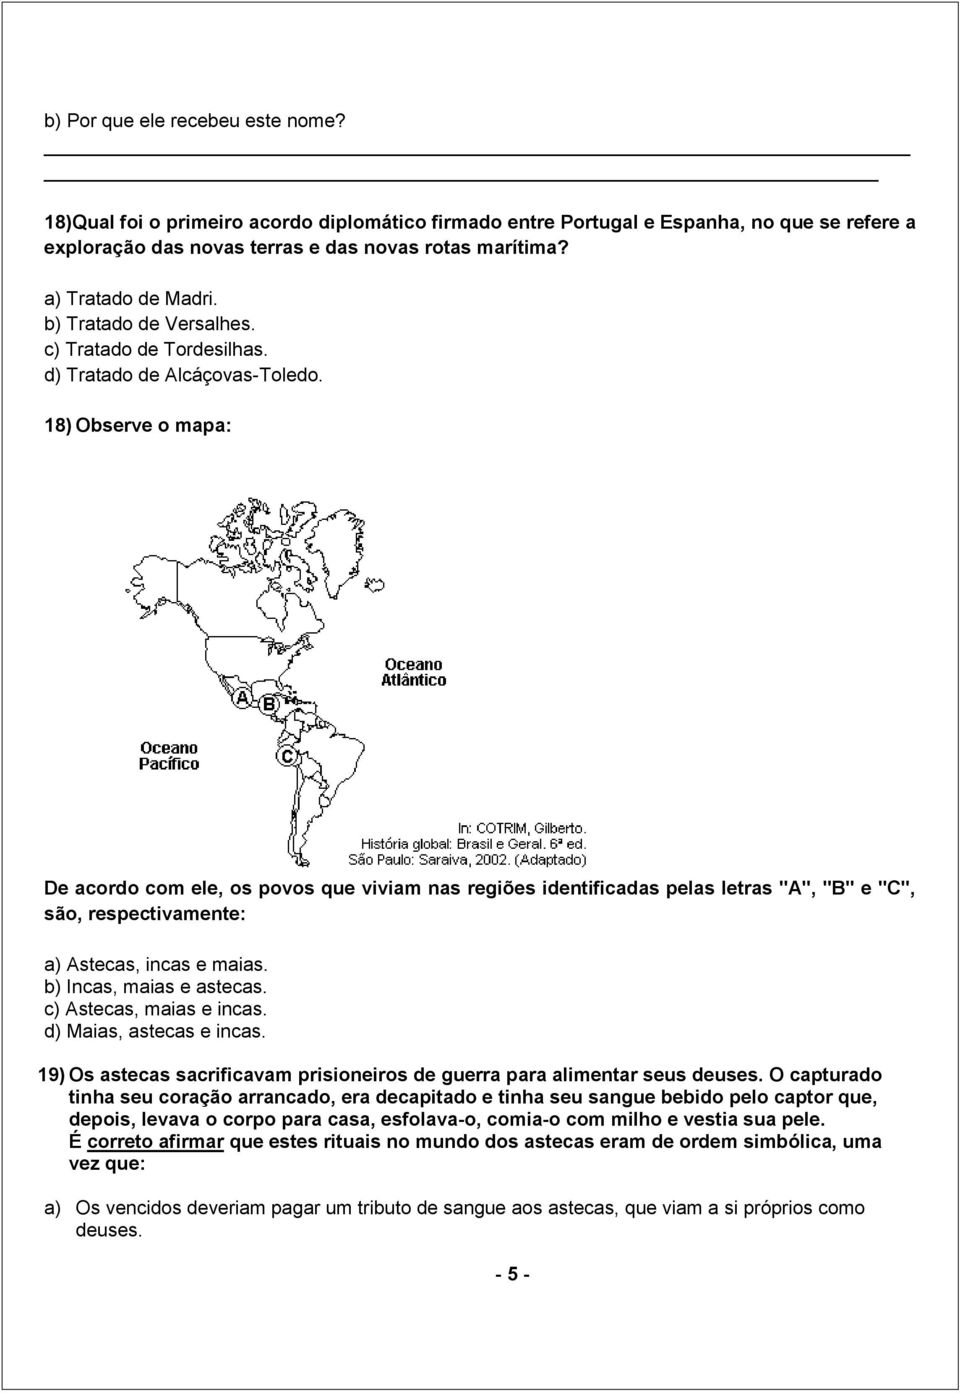 18) Observe o mapa: De acordo com ele, os povos que viviam nas regiões identificadas pelas letras "A", "B" e "C", são, respectivamente: a) Astecas, incas e maias. b) Incas, maias e astecas.